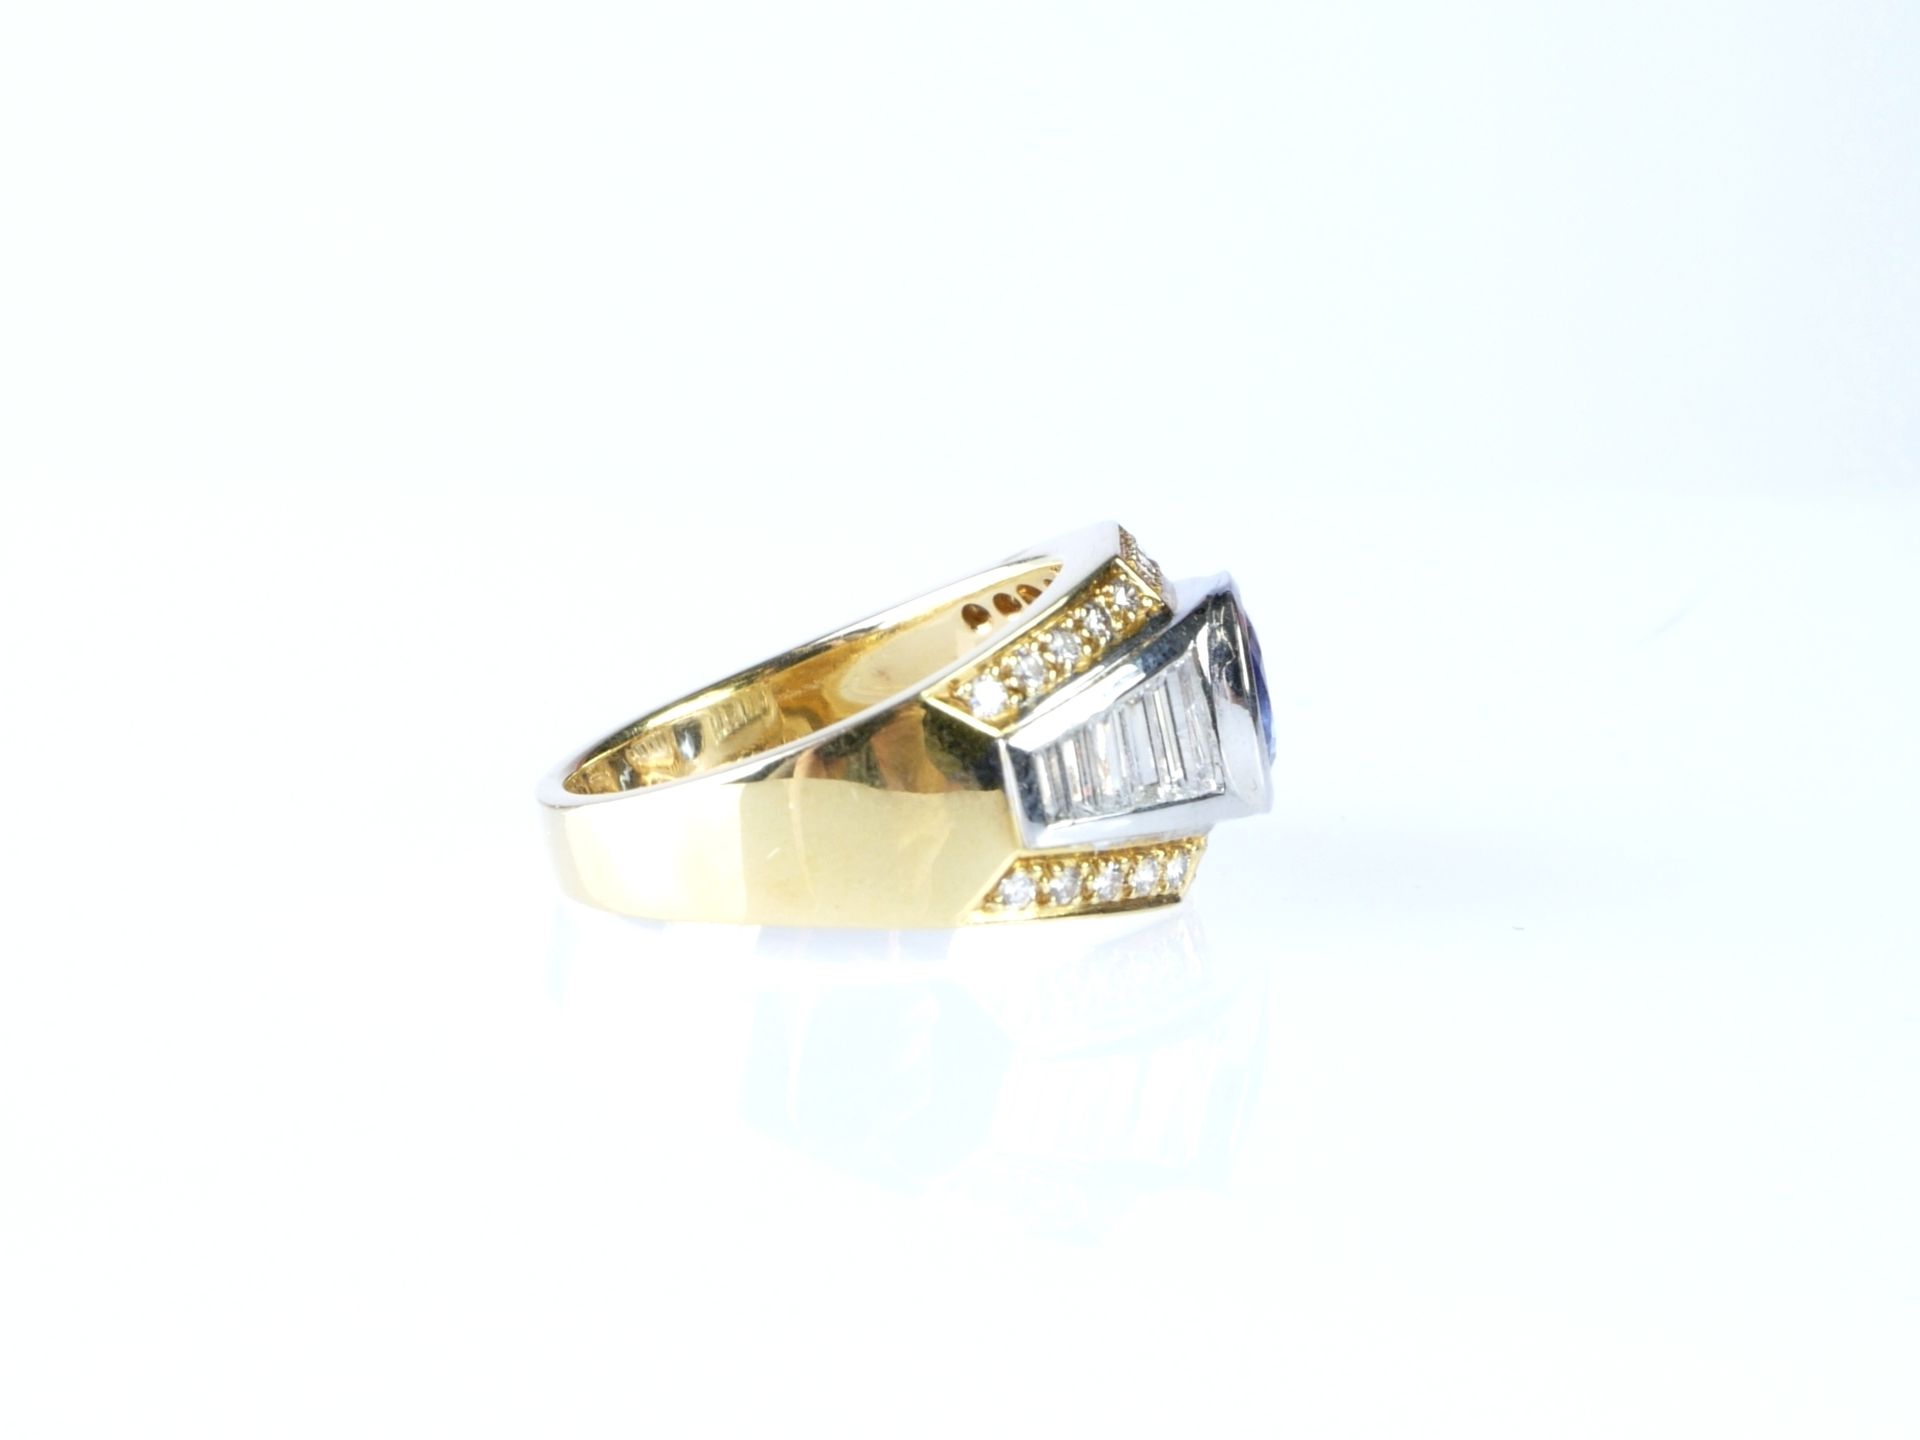 Schott Saphir Ring in Bicolor WG/GG 750 mit Diamanten und Brillanten - Bild 3 aus 5